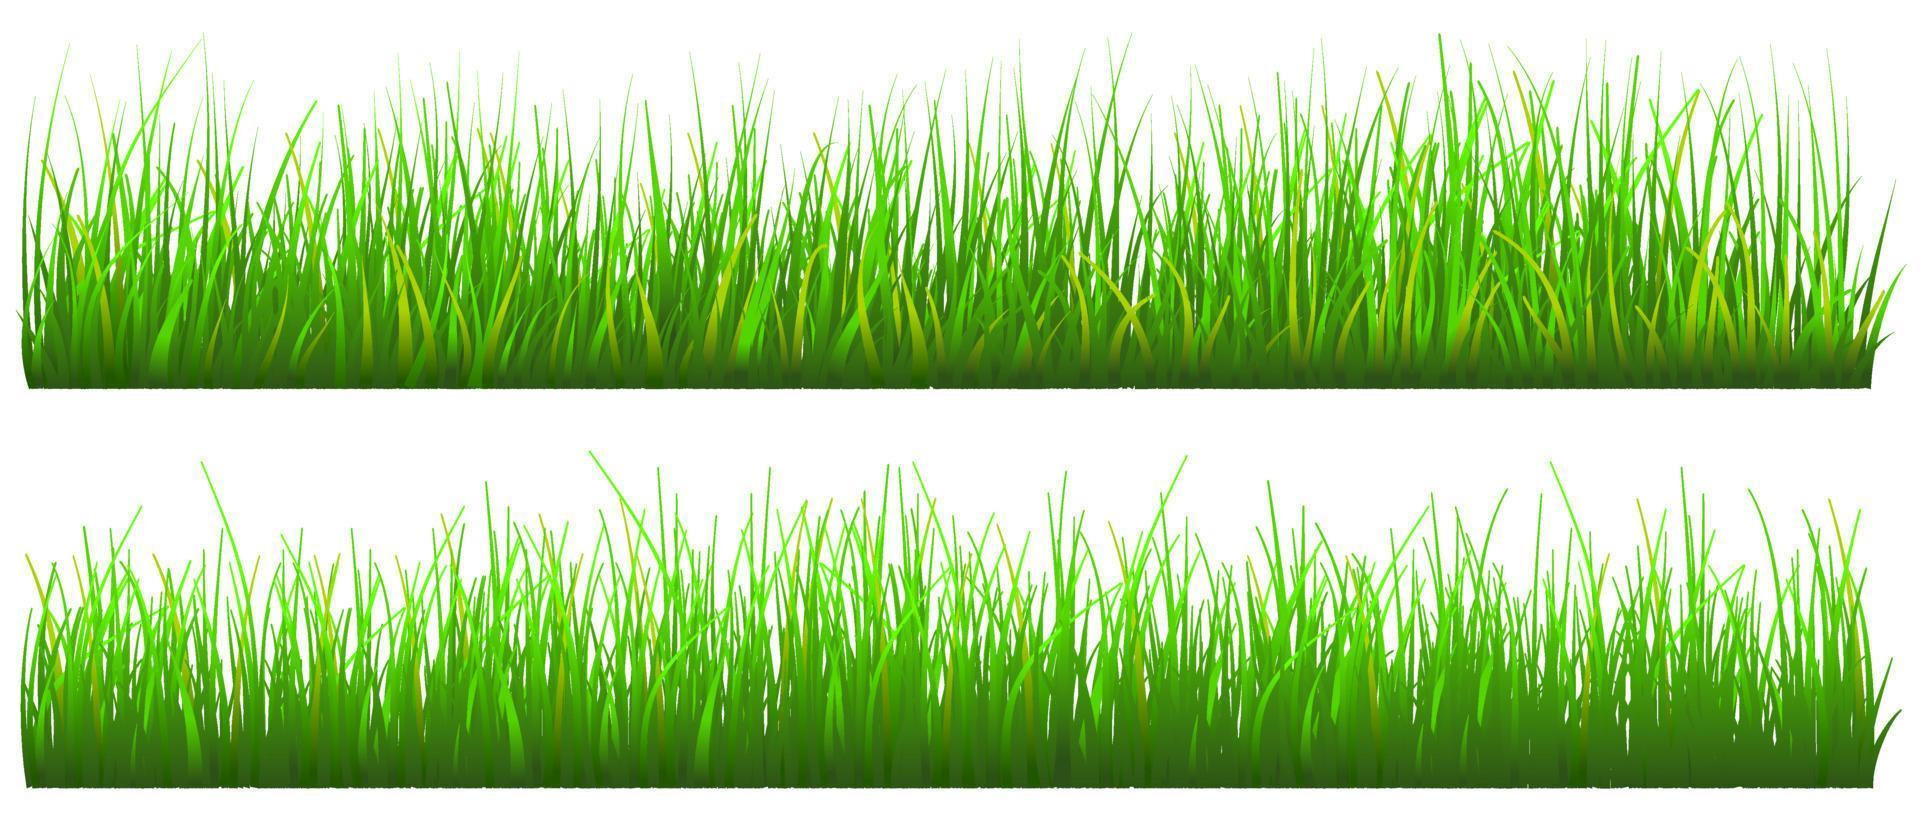 groen gras achtergrond, realistische gras set geïsoleerd, gratis vector